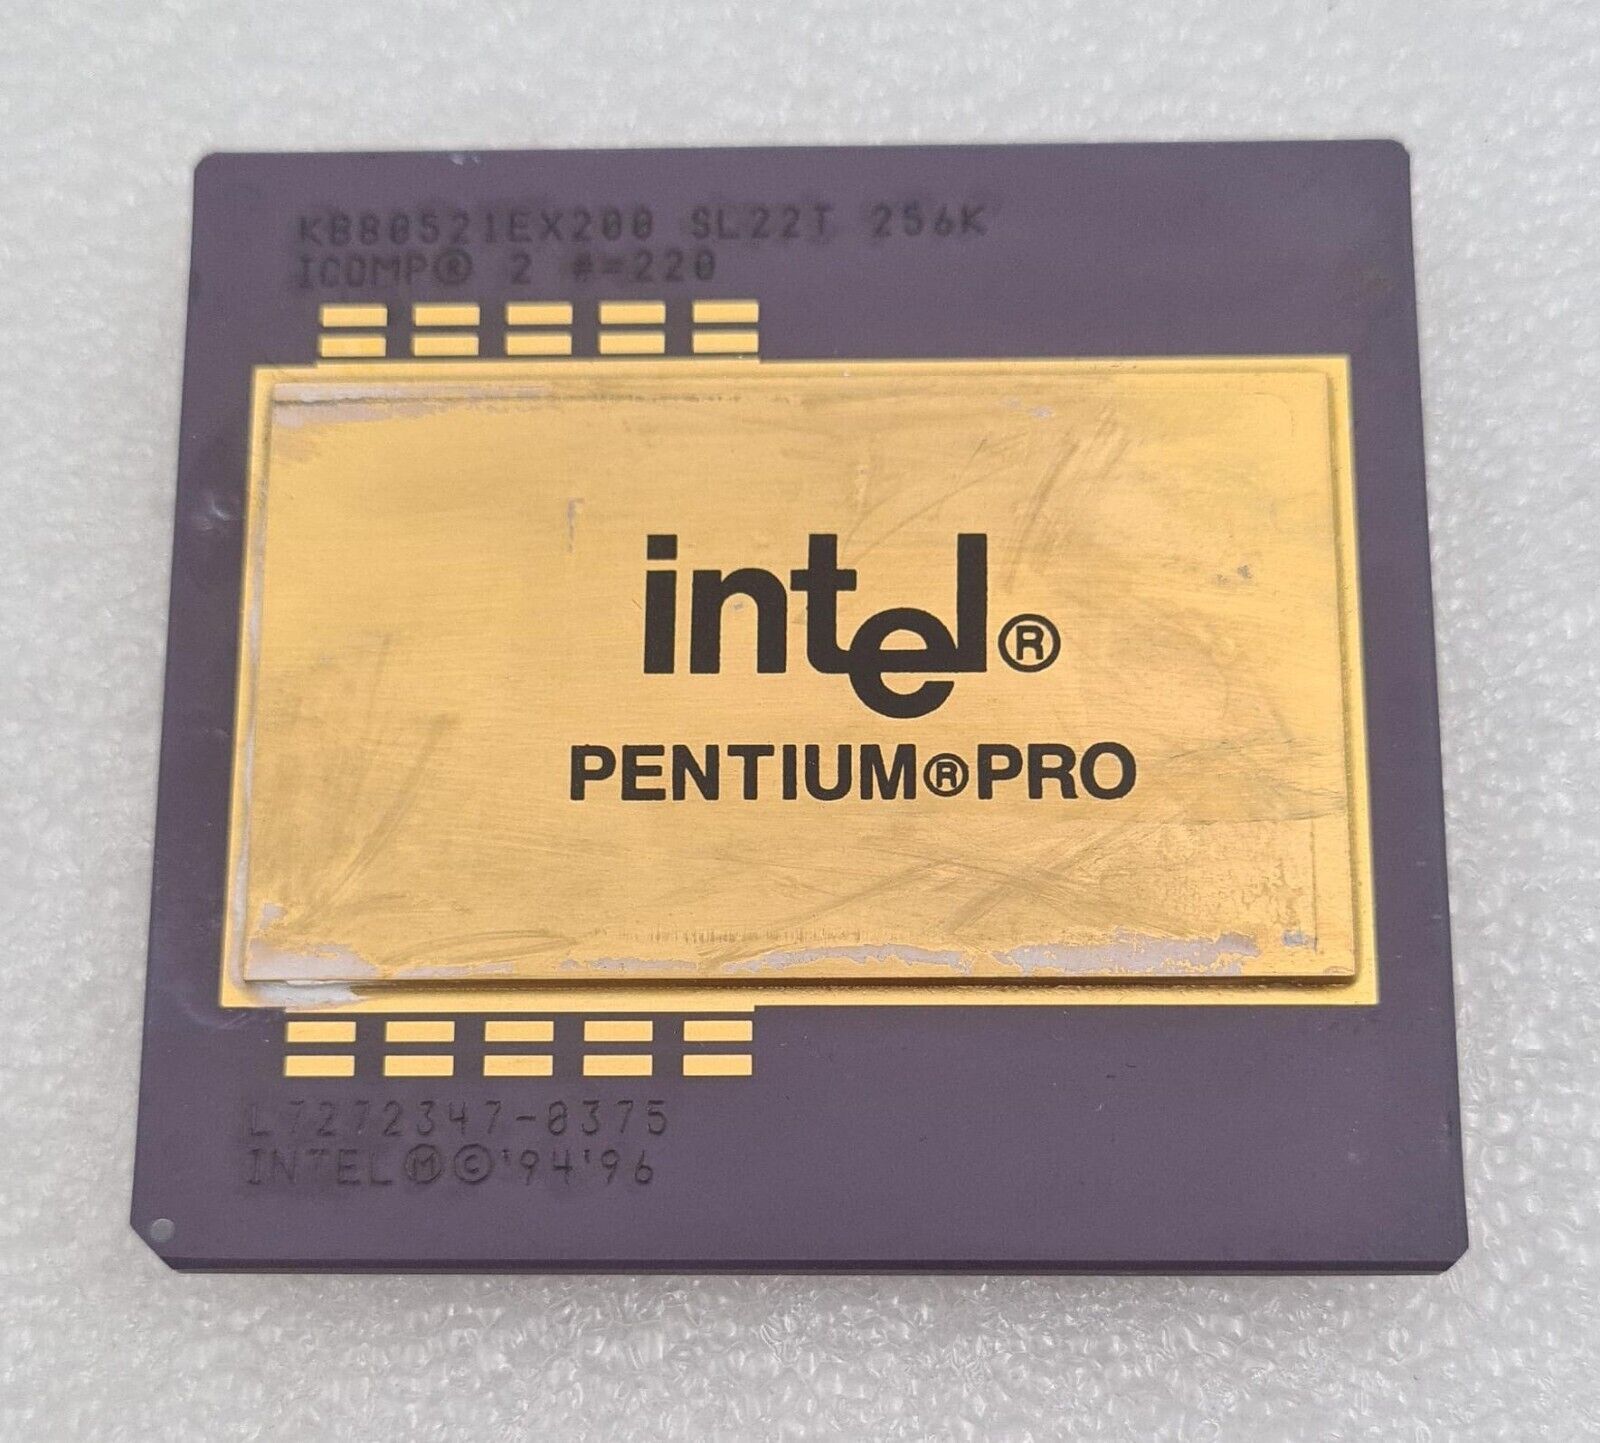 Intel Pentium Pro KB80521EX200 SL22T 256K Ceramic CPU Processor GOLD Vintage